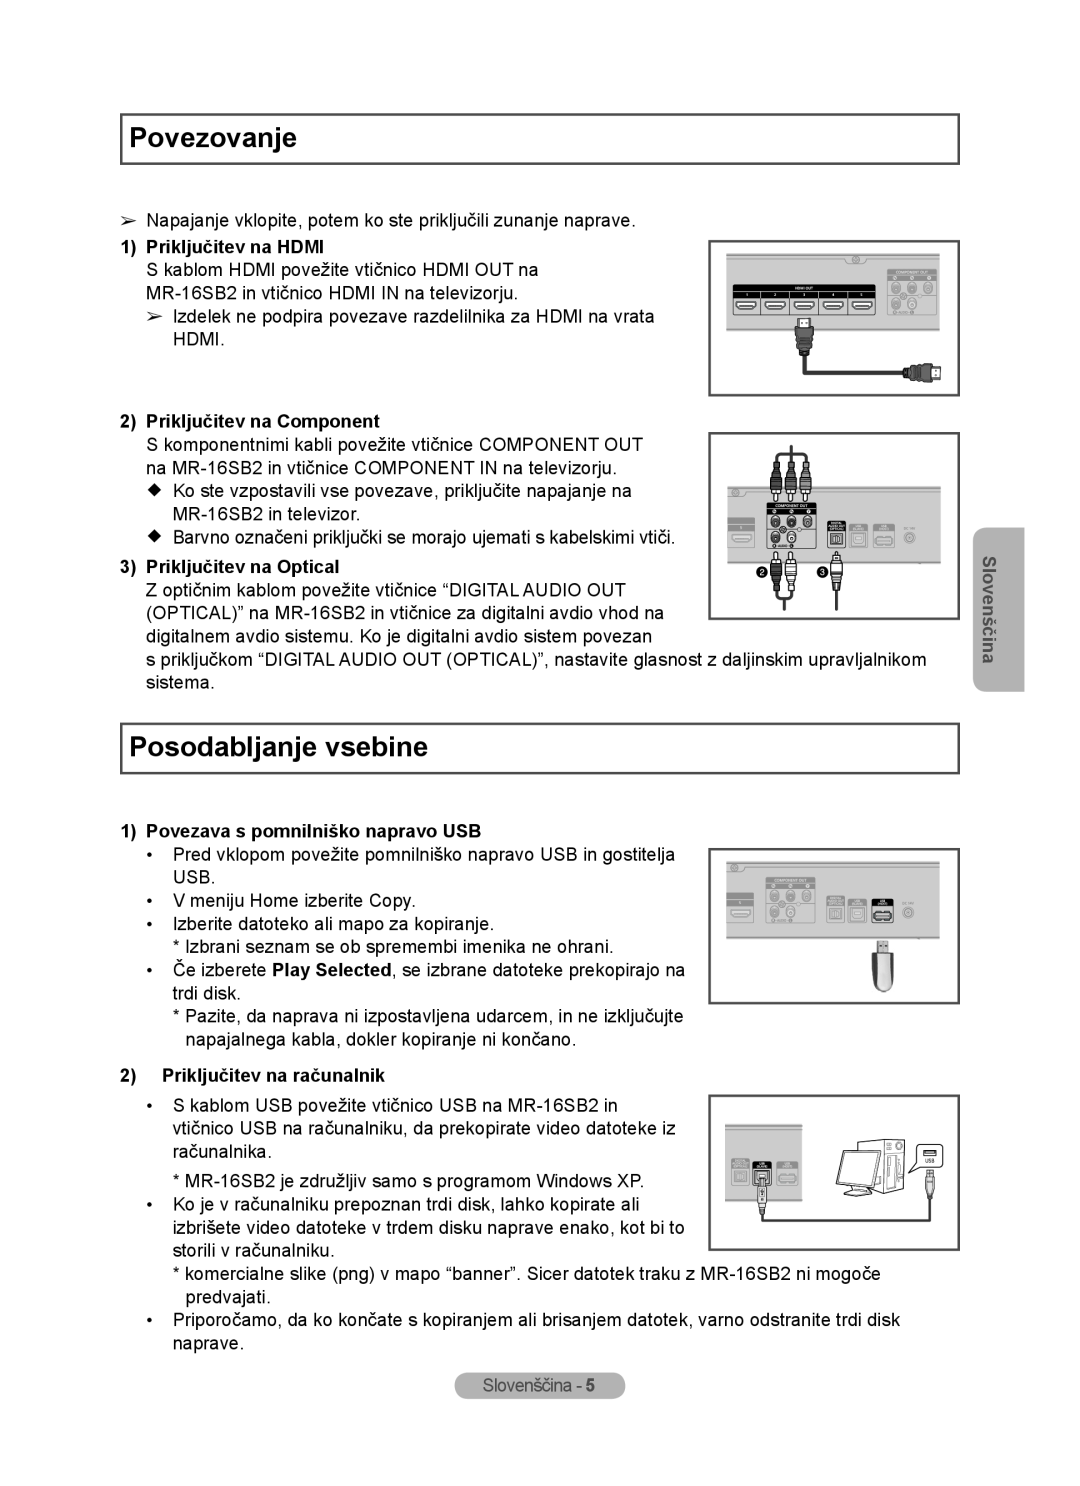 Samsung MR-16SB2 manual Povezovanje, Posodabljanje vsebine, Priključitev na HDMI, Priključitev na Component, Slovenščina 